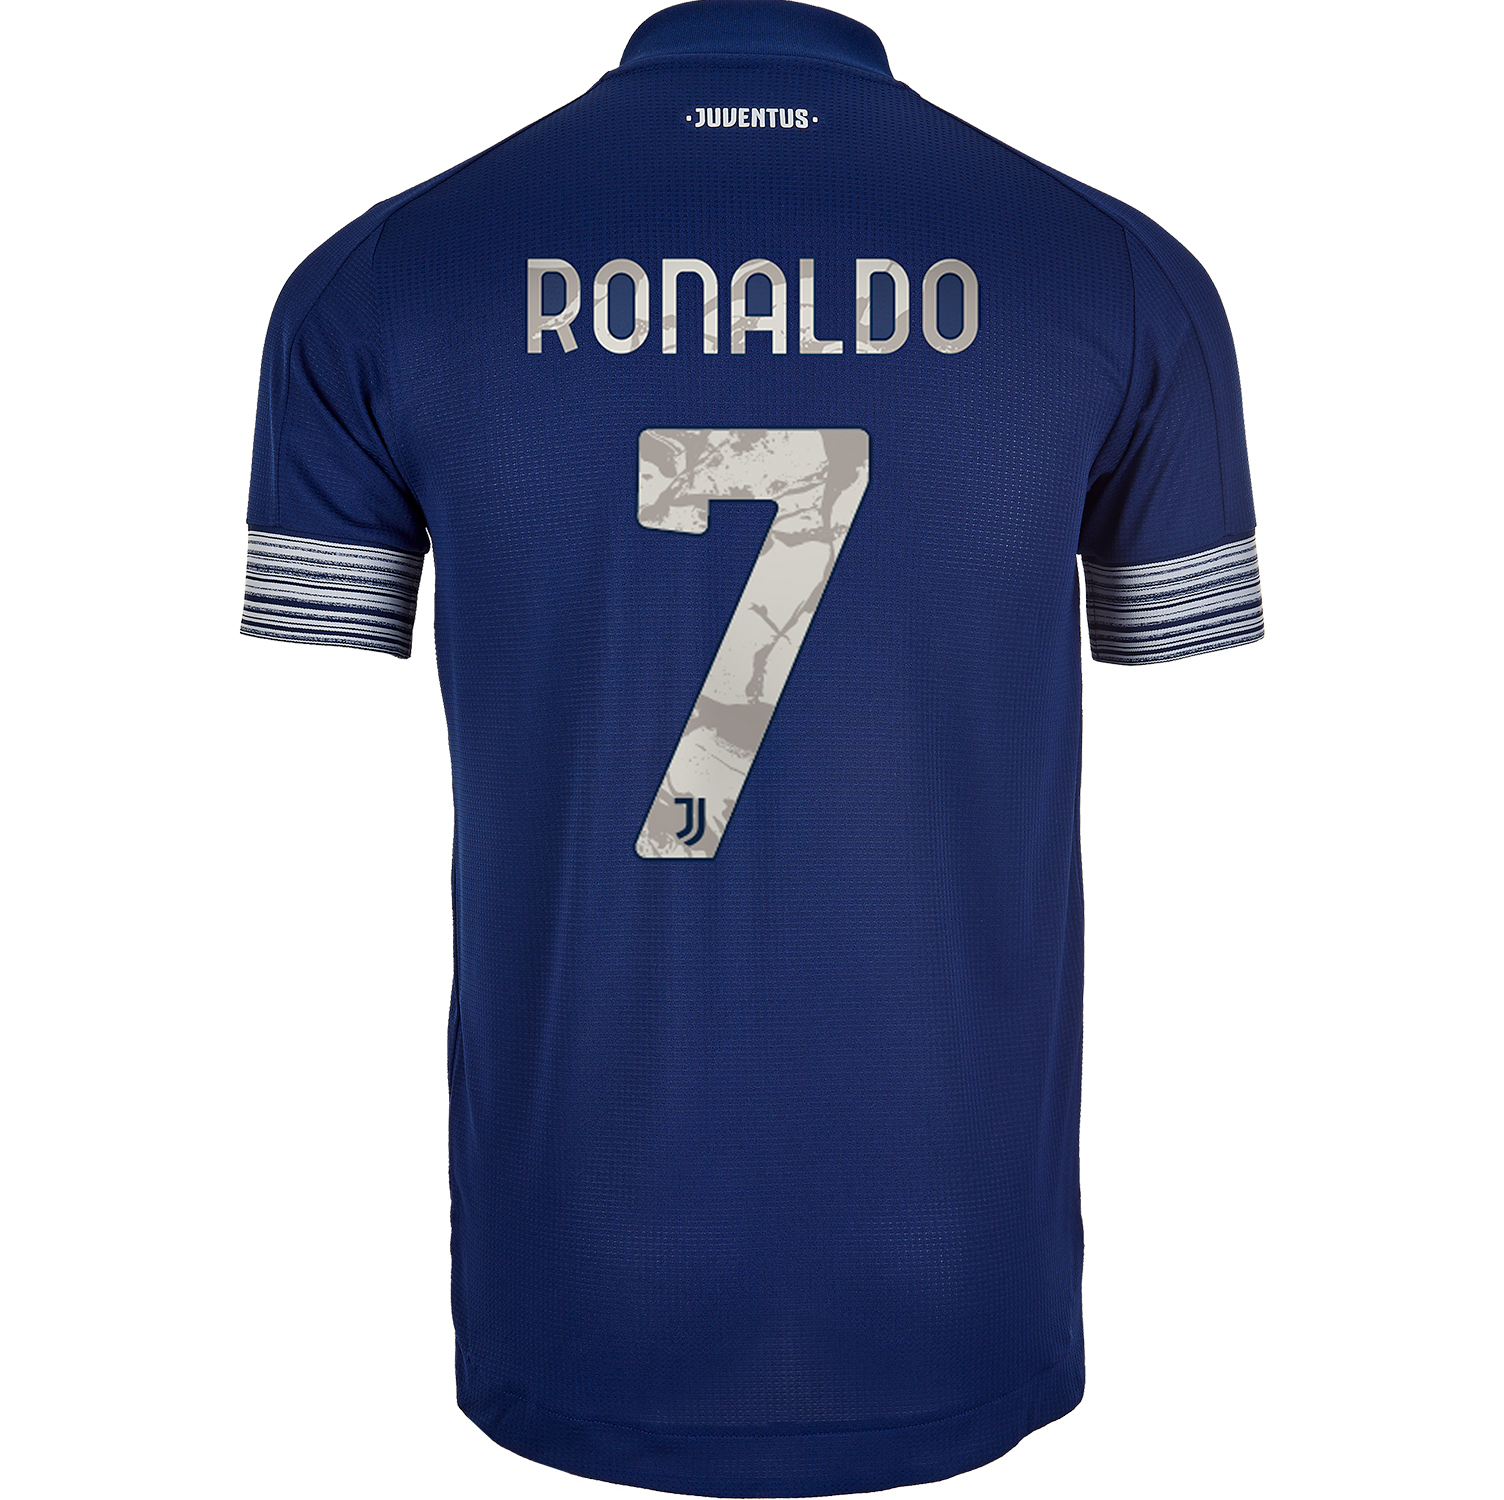 authentic ronaldo jersey